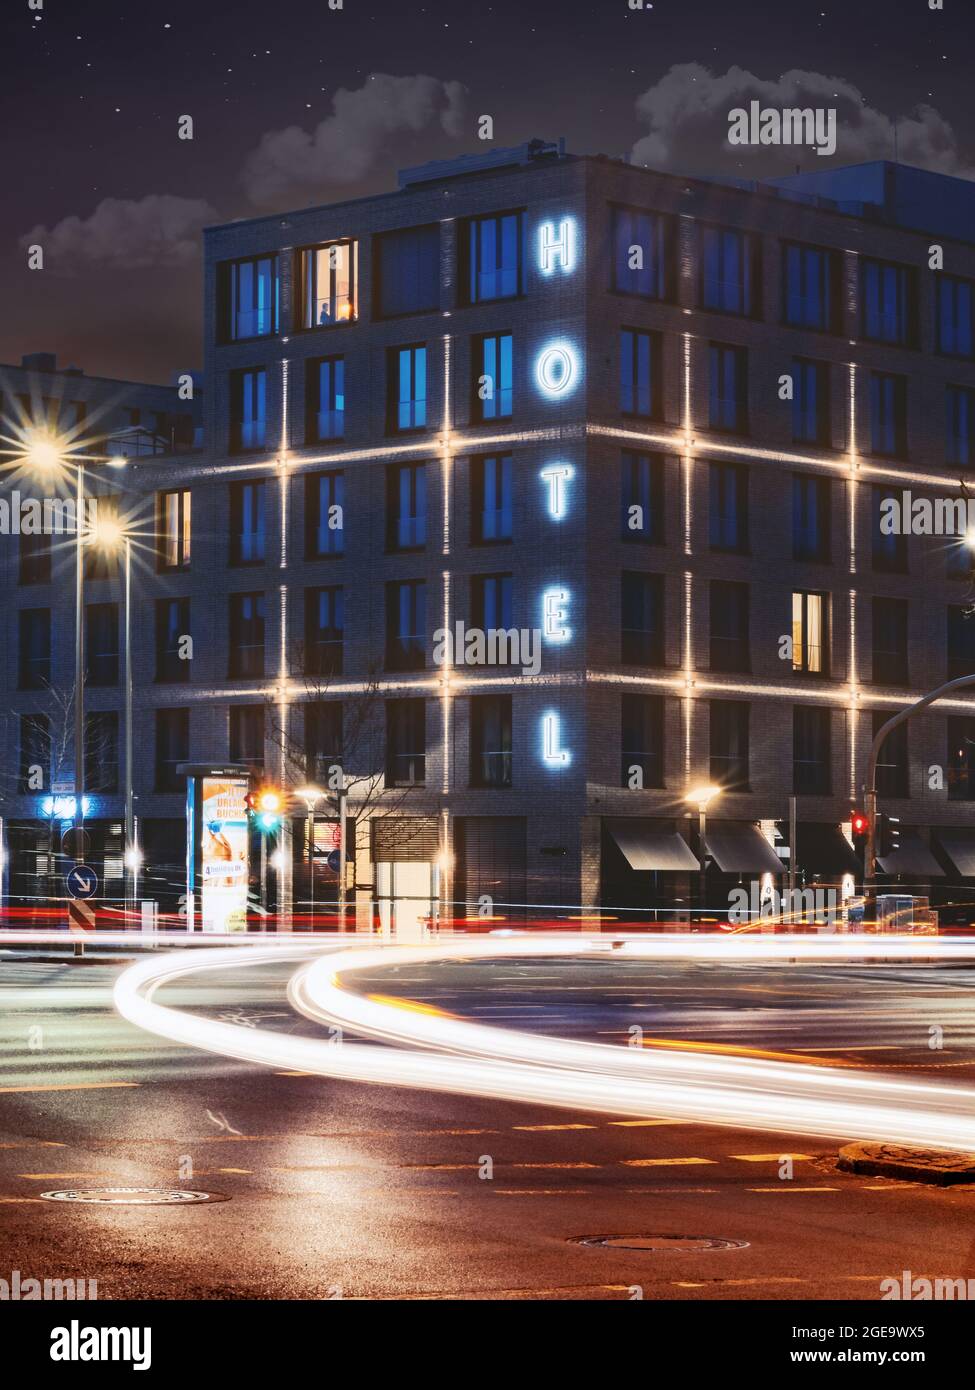 GOETTINGEN, GERMANY - Apr 22, 2021: A beautiful shot  of  Freigeist Hotel in the nighttime, Goettingen, Germany Stock Photo